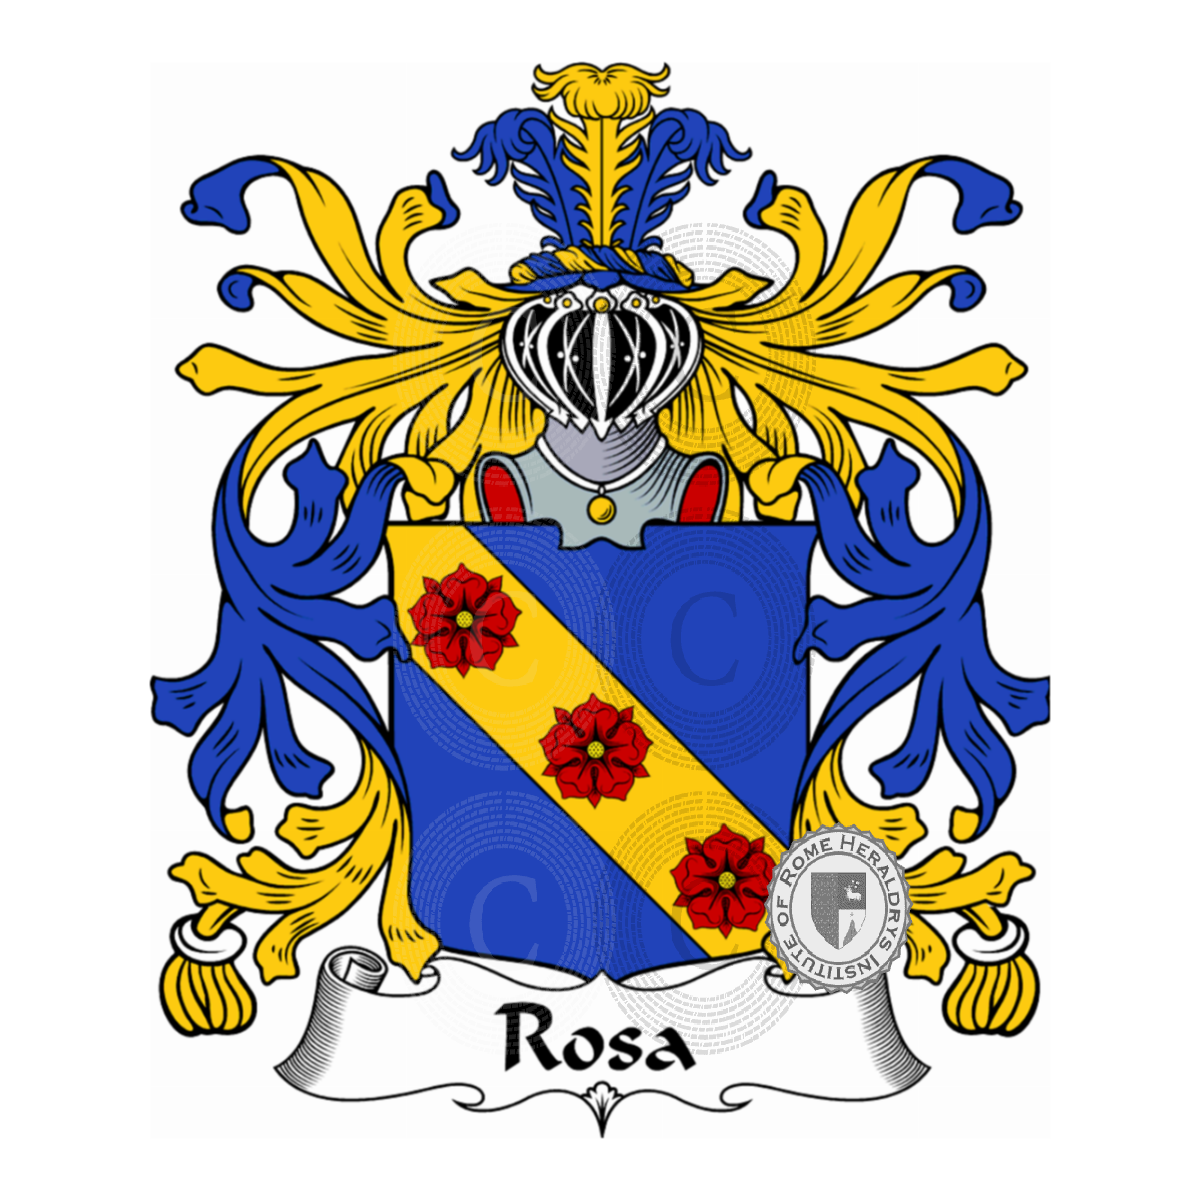 Stemma della famigliaRosa, de Rosa,de Rosis